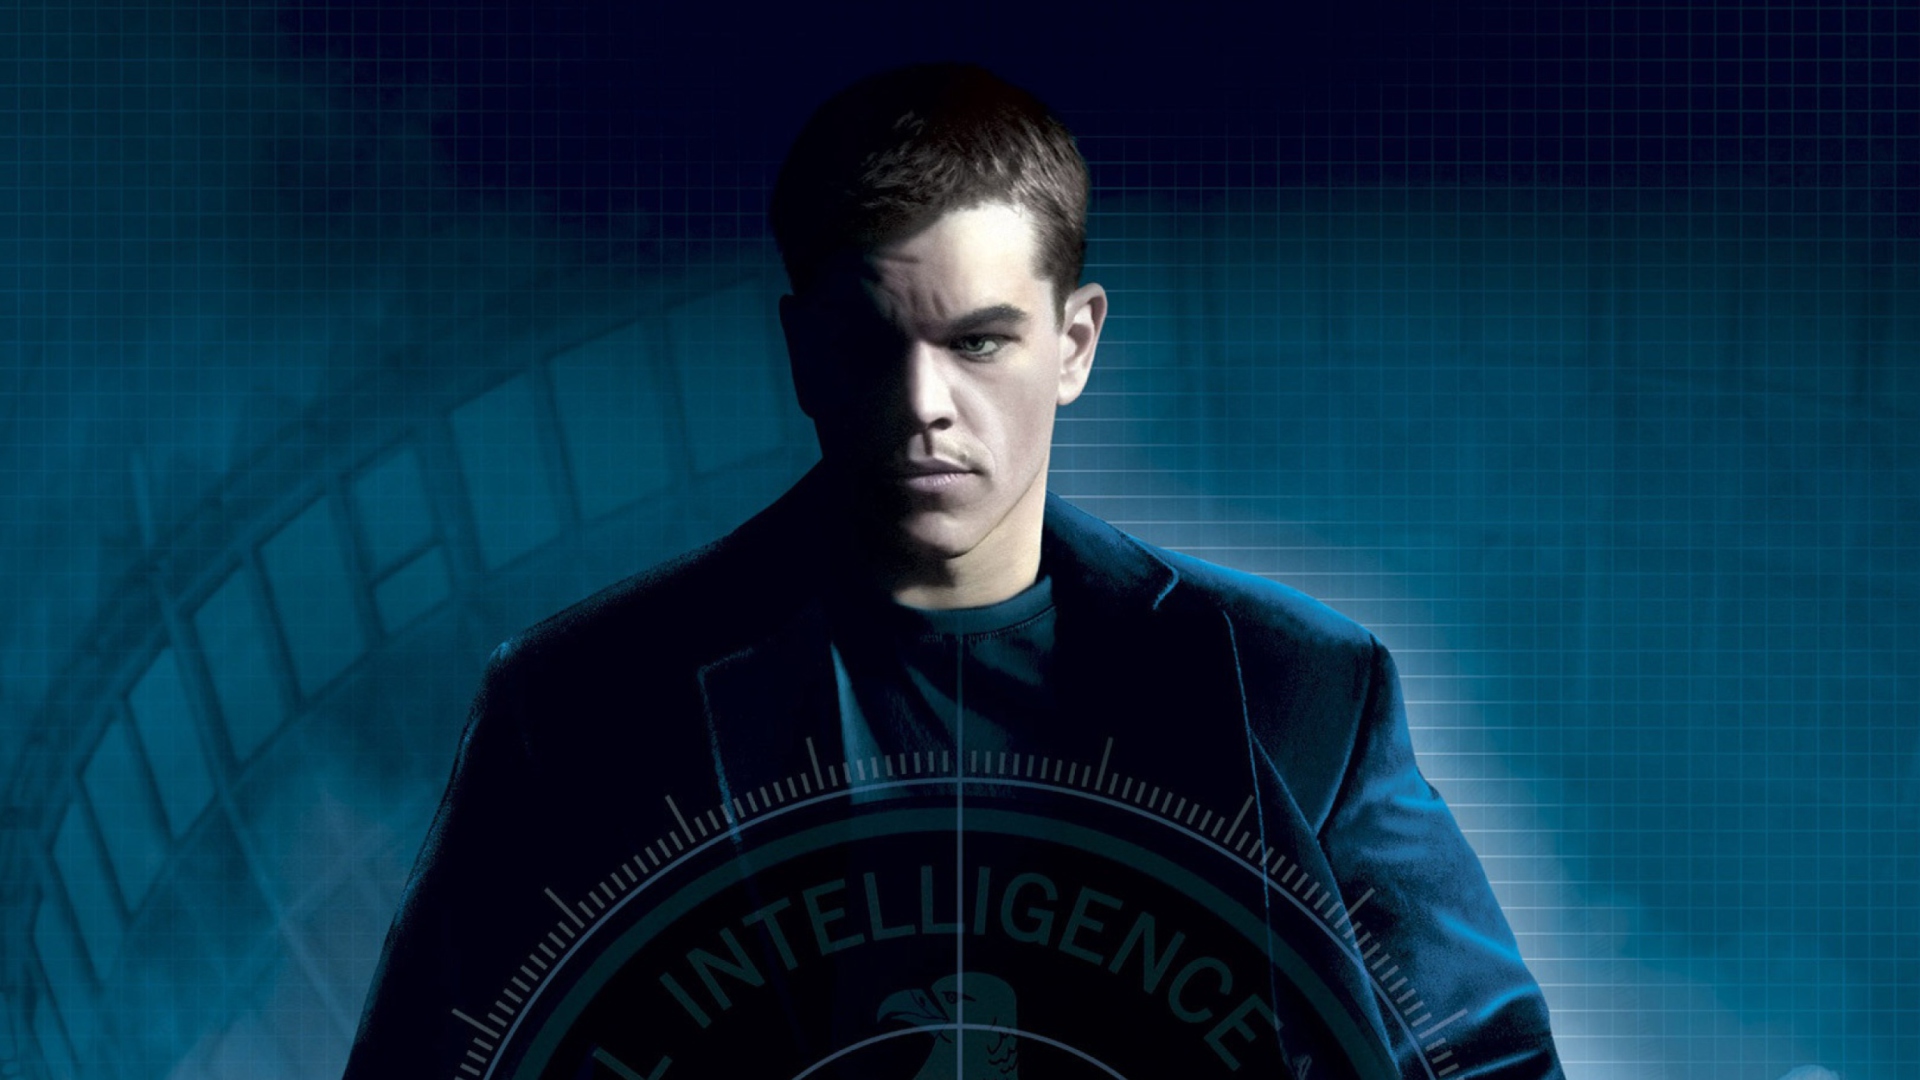 Matt Damon In Bourne Movies screenshot #1 1920x1080